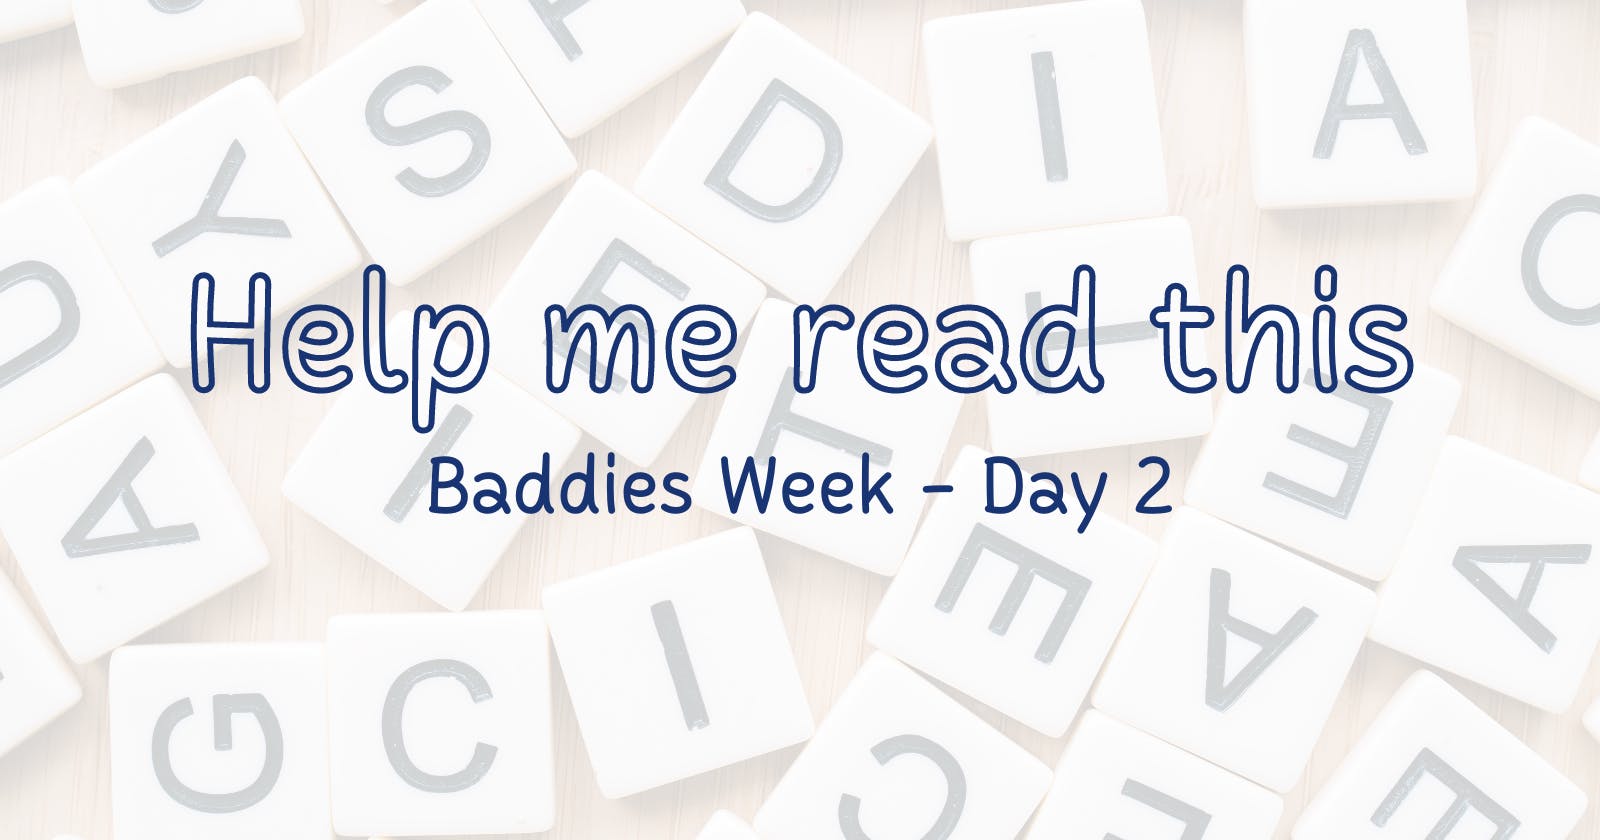 Baddies Week - Day 2